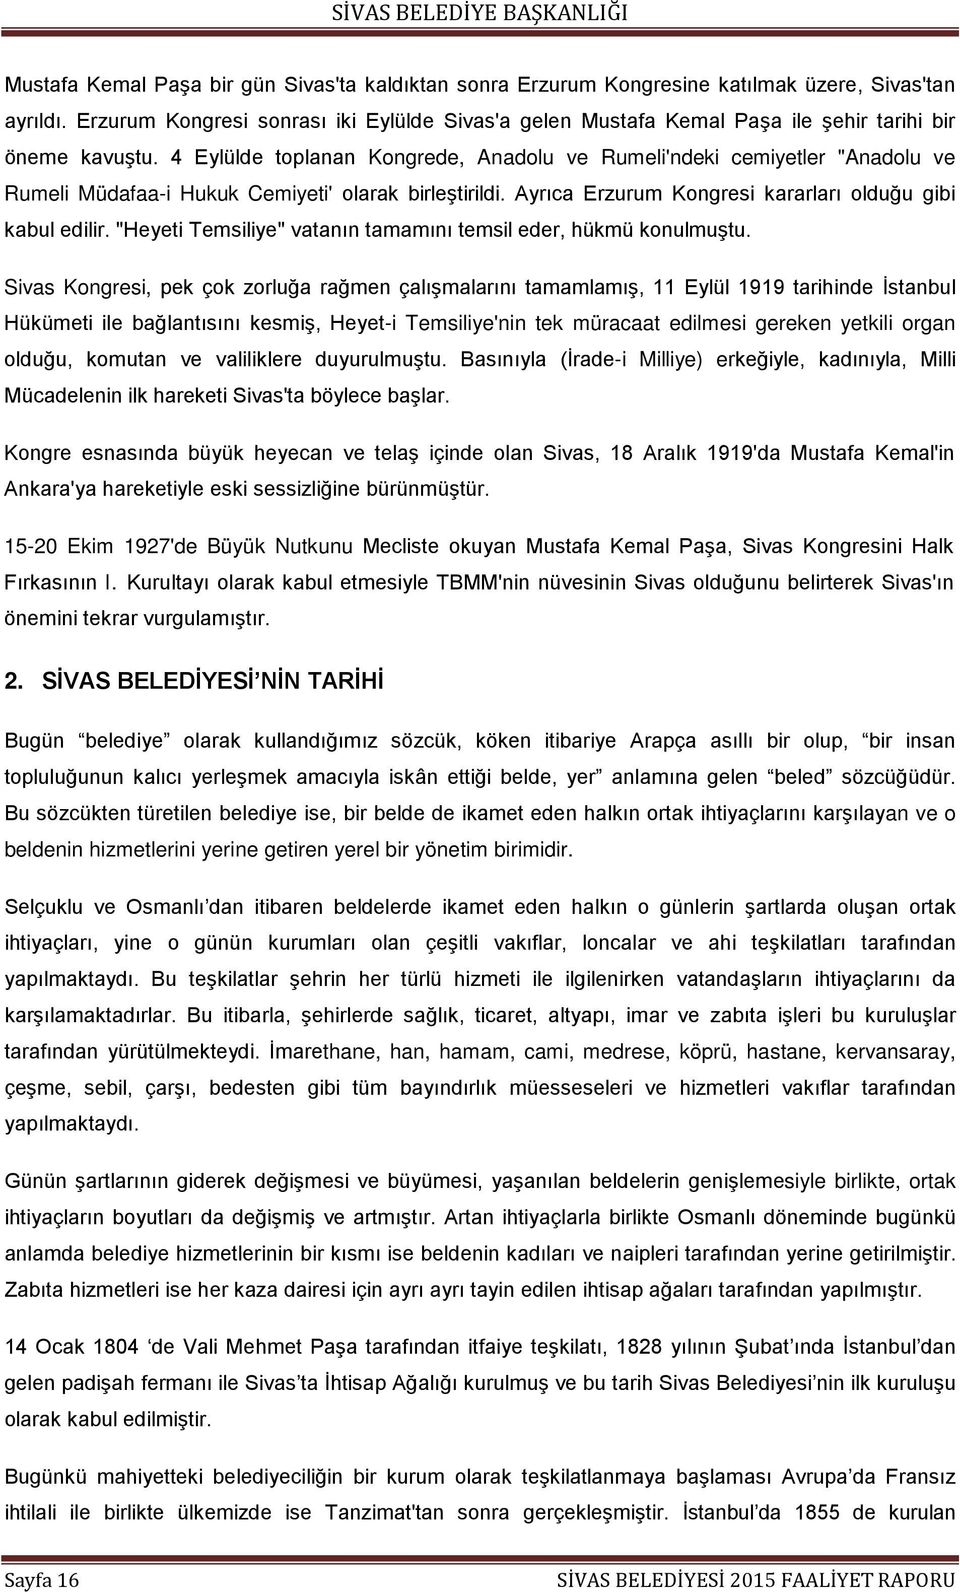 4 Eylülde toplanan Kongrede, Anadolu ve Rumeli'ndeki cemiyetler "Anadolu ve Rumeli Müdafaa-i Hukuk Cemiyeti' olarak birleştirildi. Ayrıca Erzurum Kongresi kararları olduğu gibi kabul edilir.